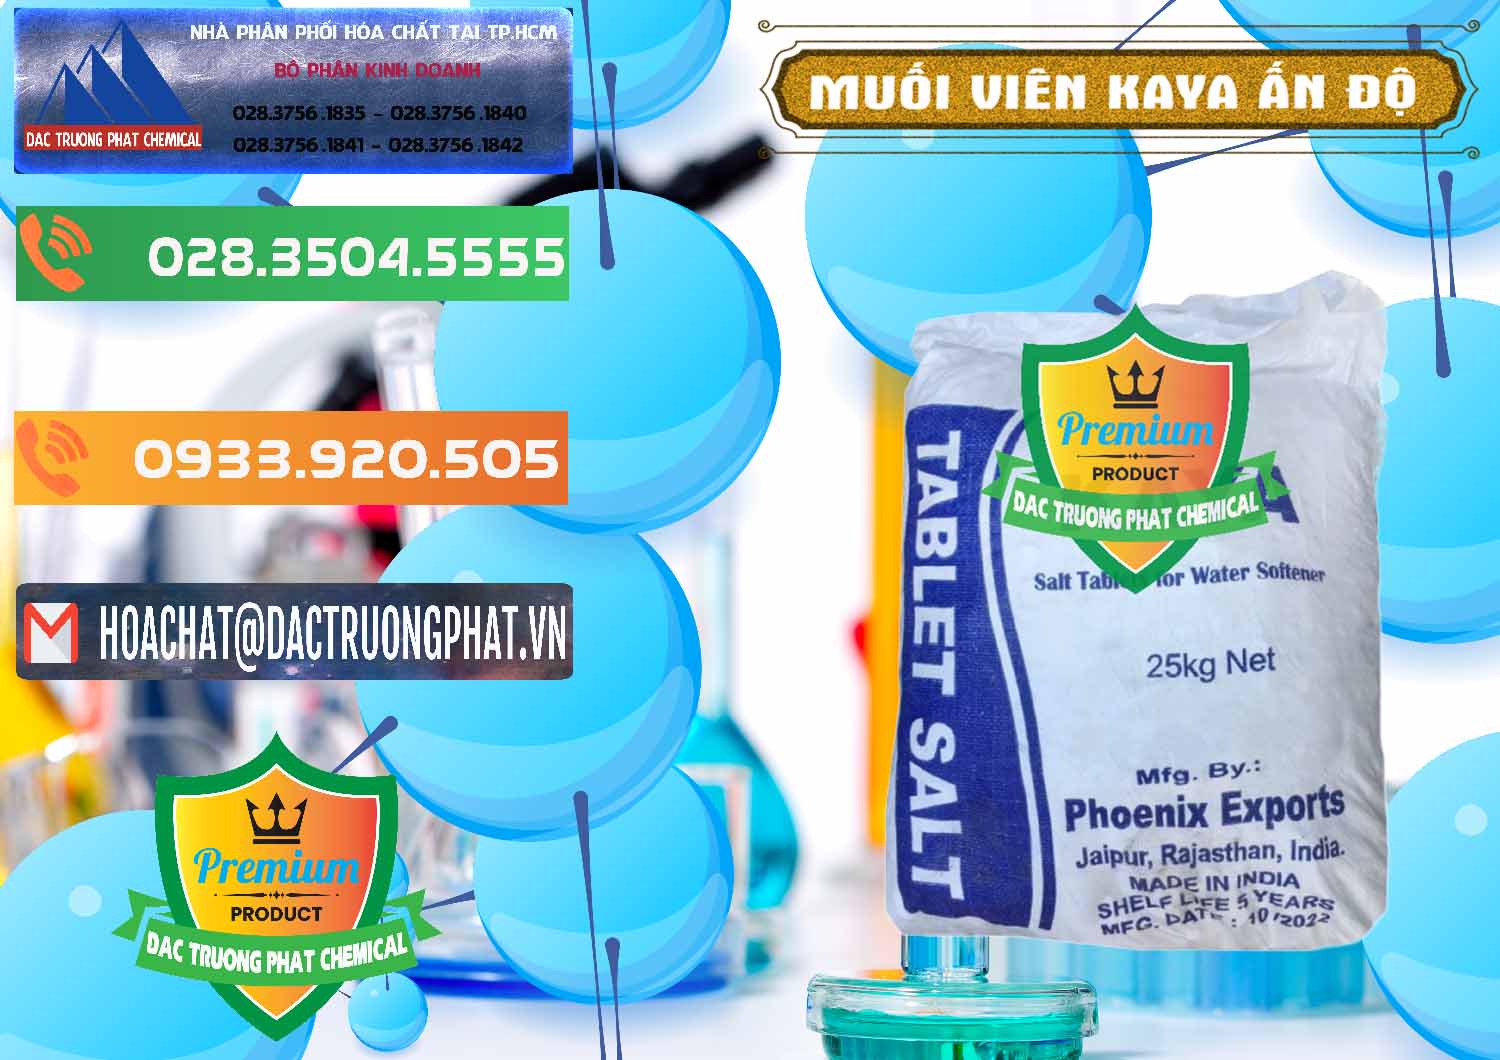 Đơn vị chuyên nhập khẩu & bán Muối NaCL – Sodium Chloride Dạng Viên Tablets Kaya Ấn Độ India - 0368 - Cty chuyên nhập khẩu & cung cấp hóa chất tại TP.HCM - hoachatxulynuoc.com.vn